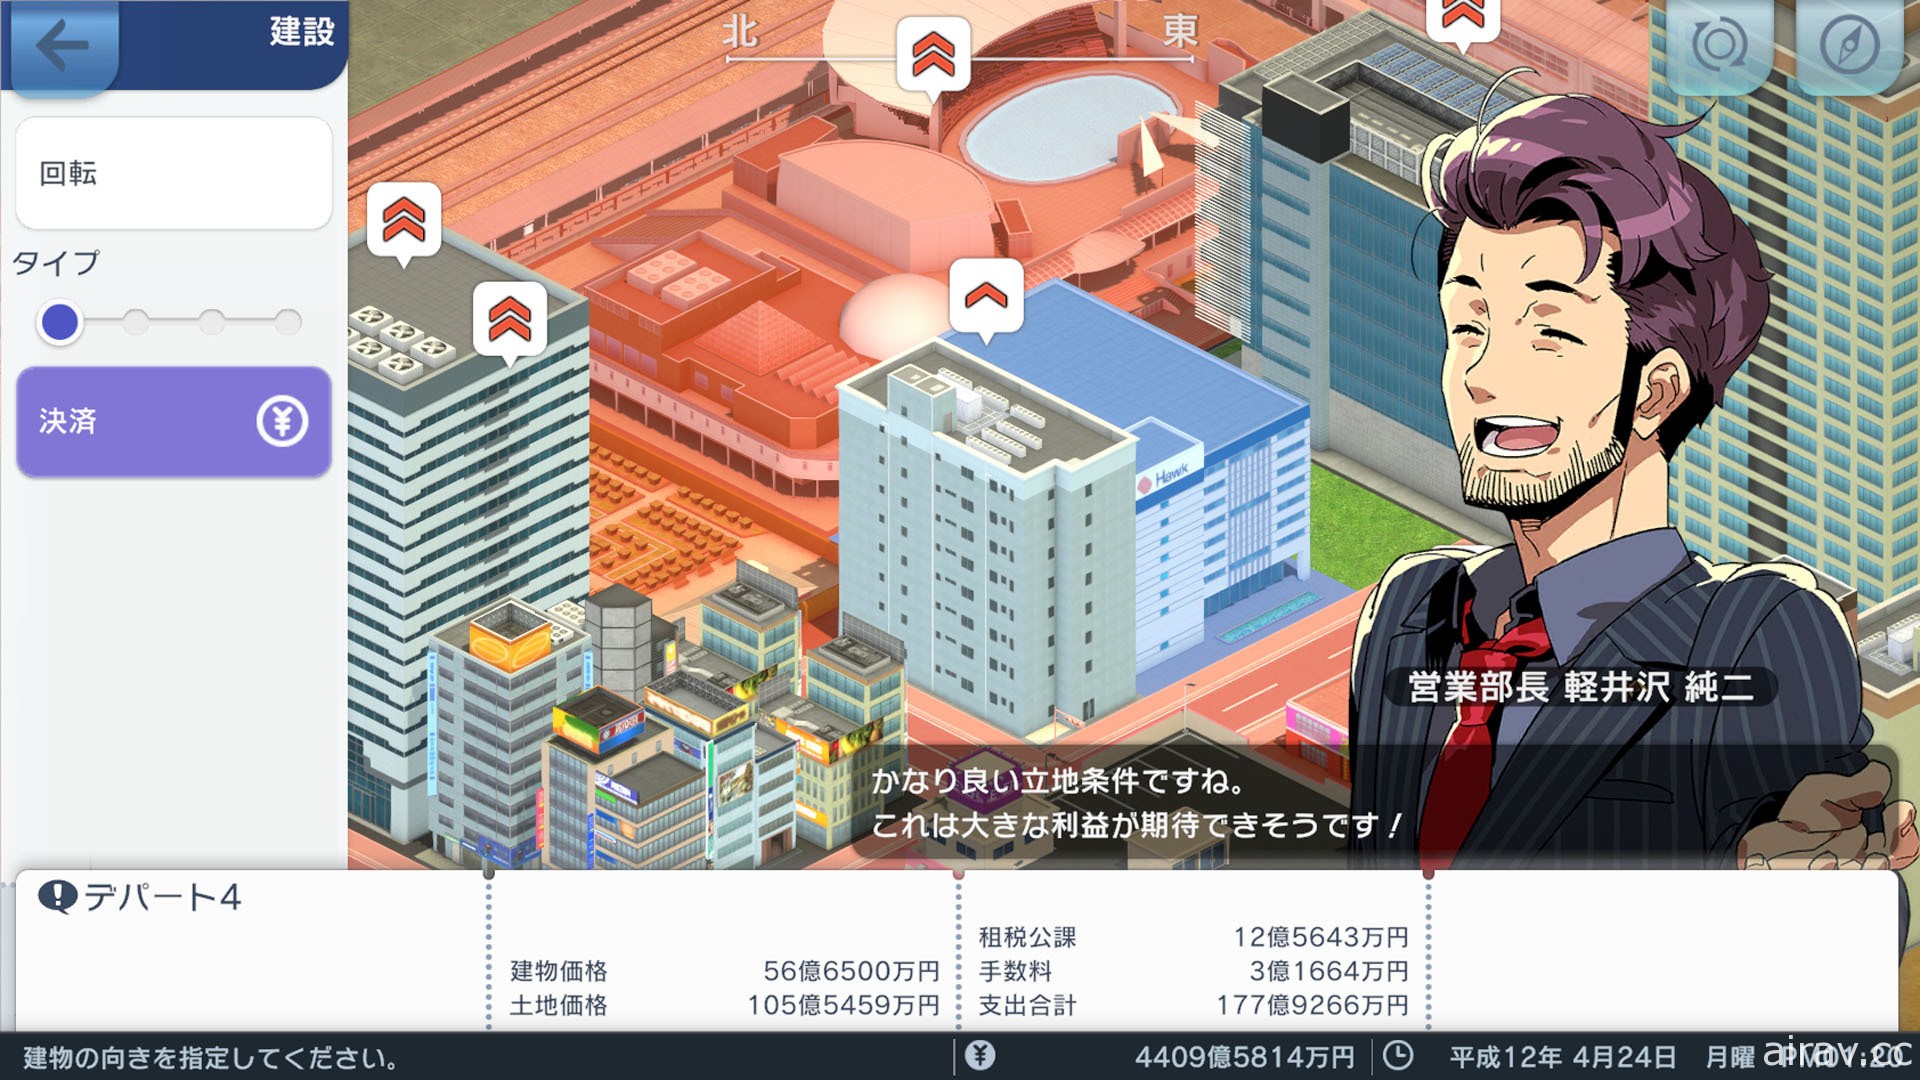 雲端遊戲版《A 列車 開始吧 觀光開發計畫 MOBILE》今於日本推出